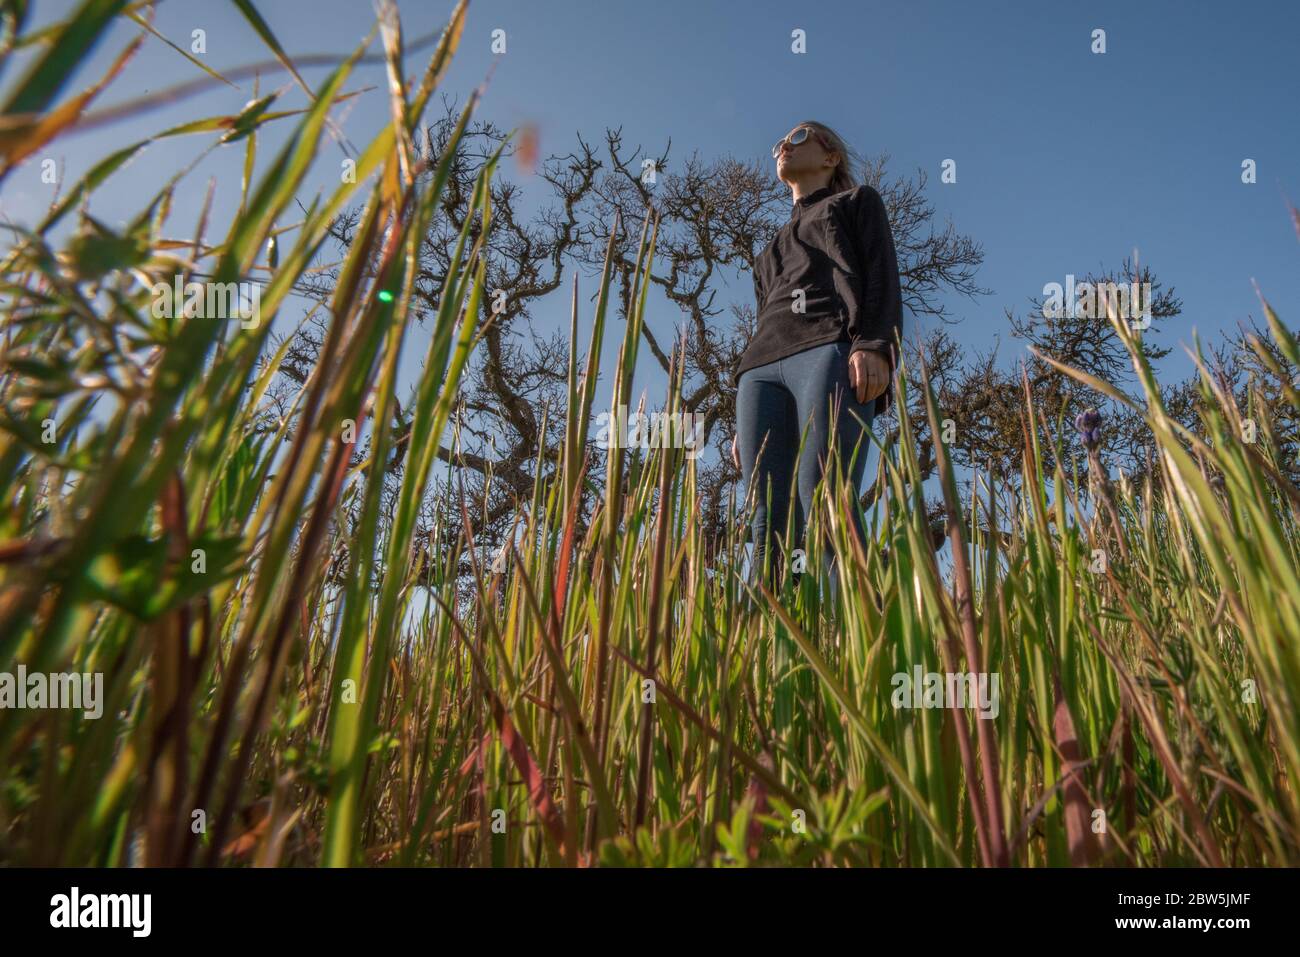 Una donna bionda in piedi in erba visto dalla prospettiva di un bug nell'erba. Angolo insolito dal basso. Foto Stock